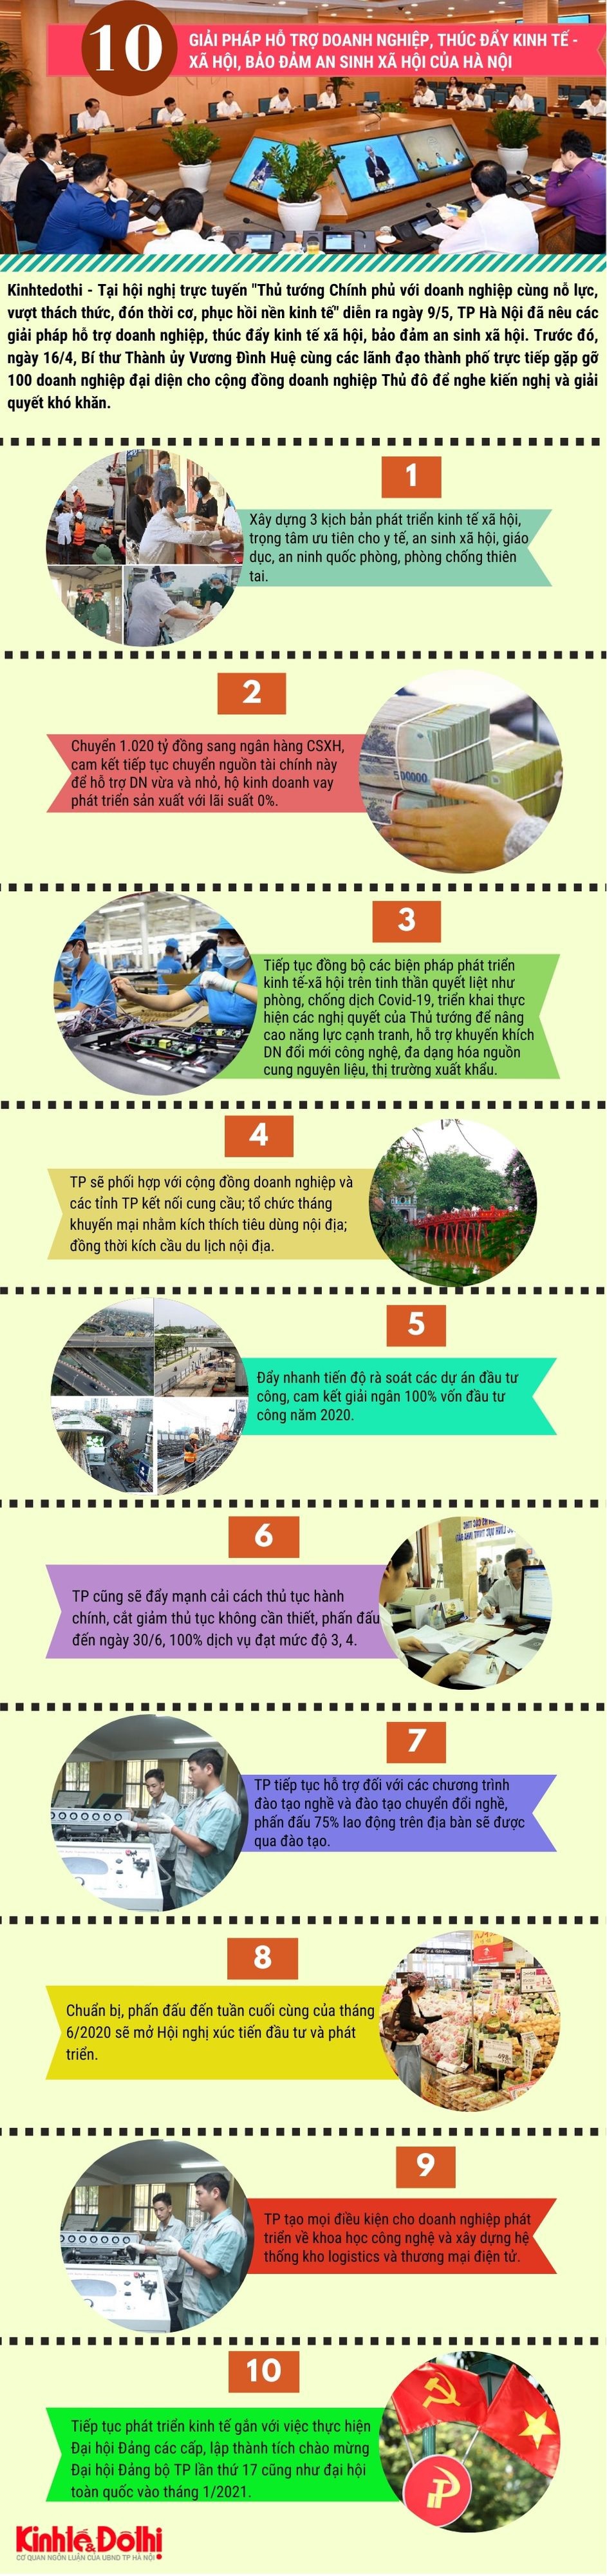 [Infographic] Hà Nội: 10 giải pháp hỗ trợ doanh nghiệp, thúc đẩy kinh tế xã hội, bảo đảm an sinh xã hội - Ảnh 1